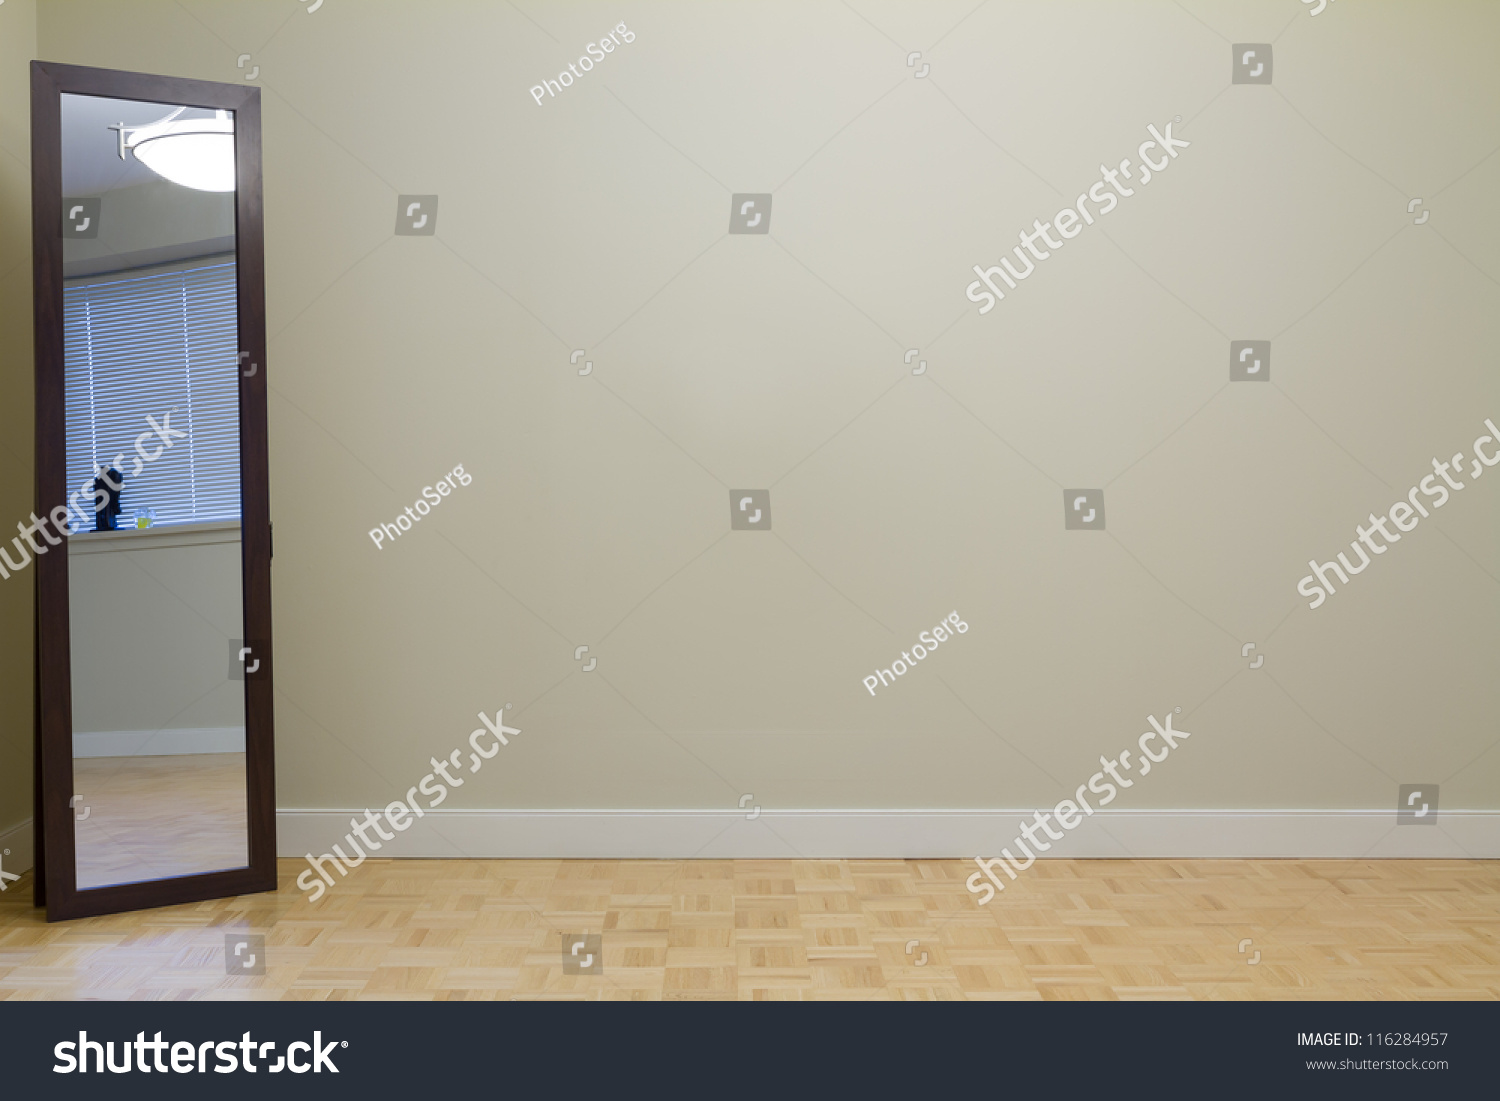 Empty Living Room Mirror New Apartment Stock Photo ...
